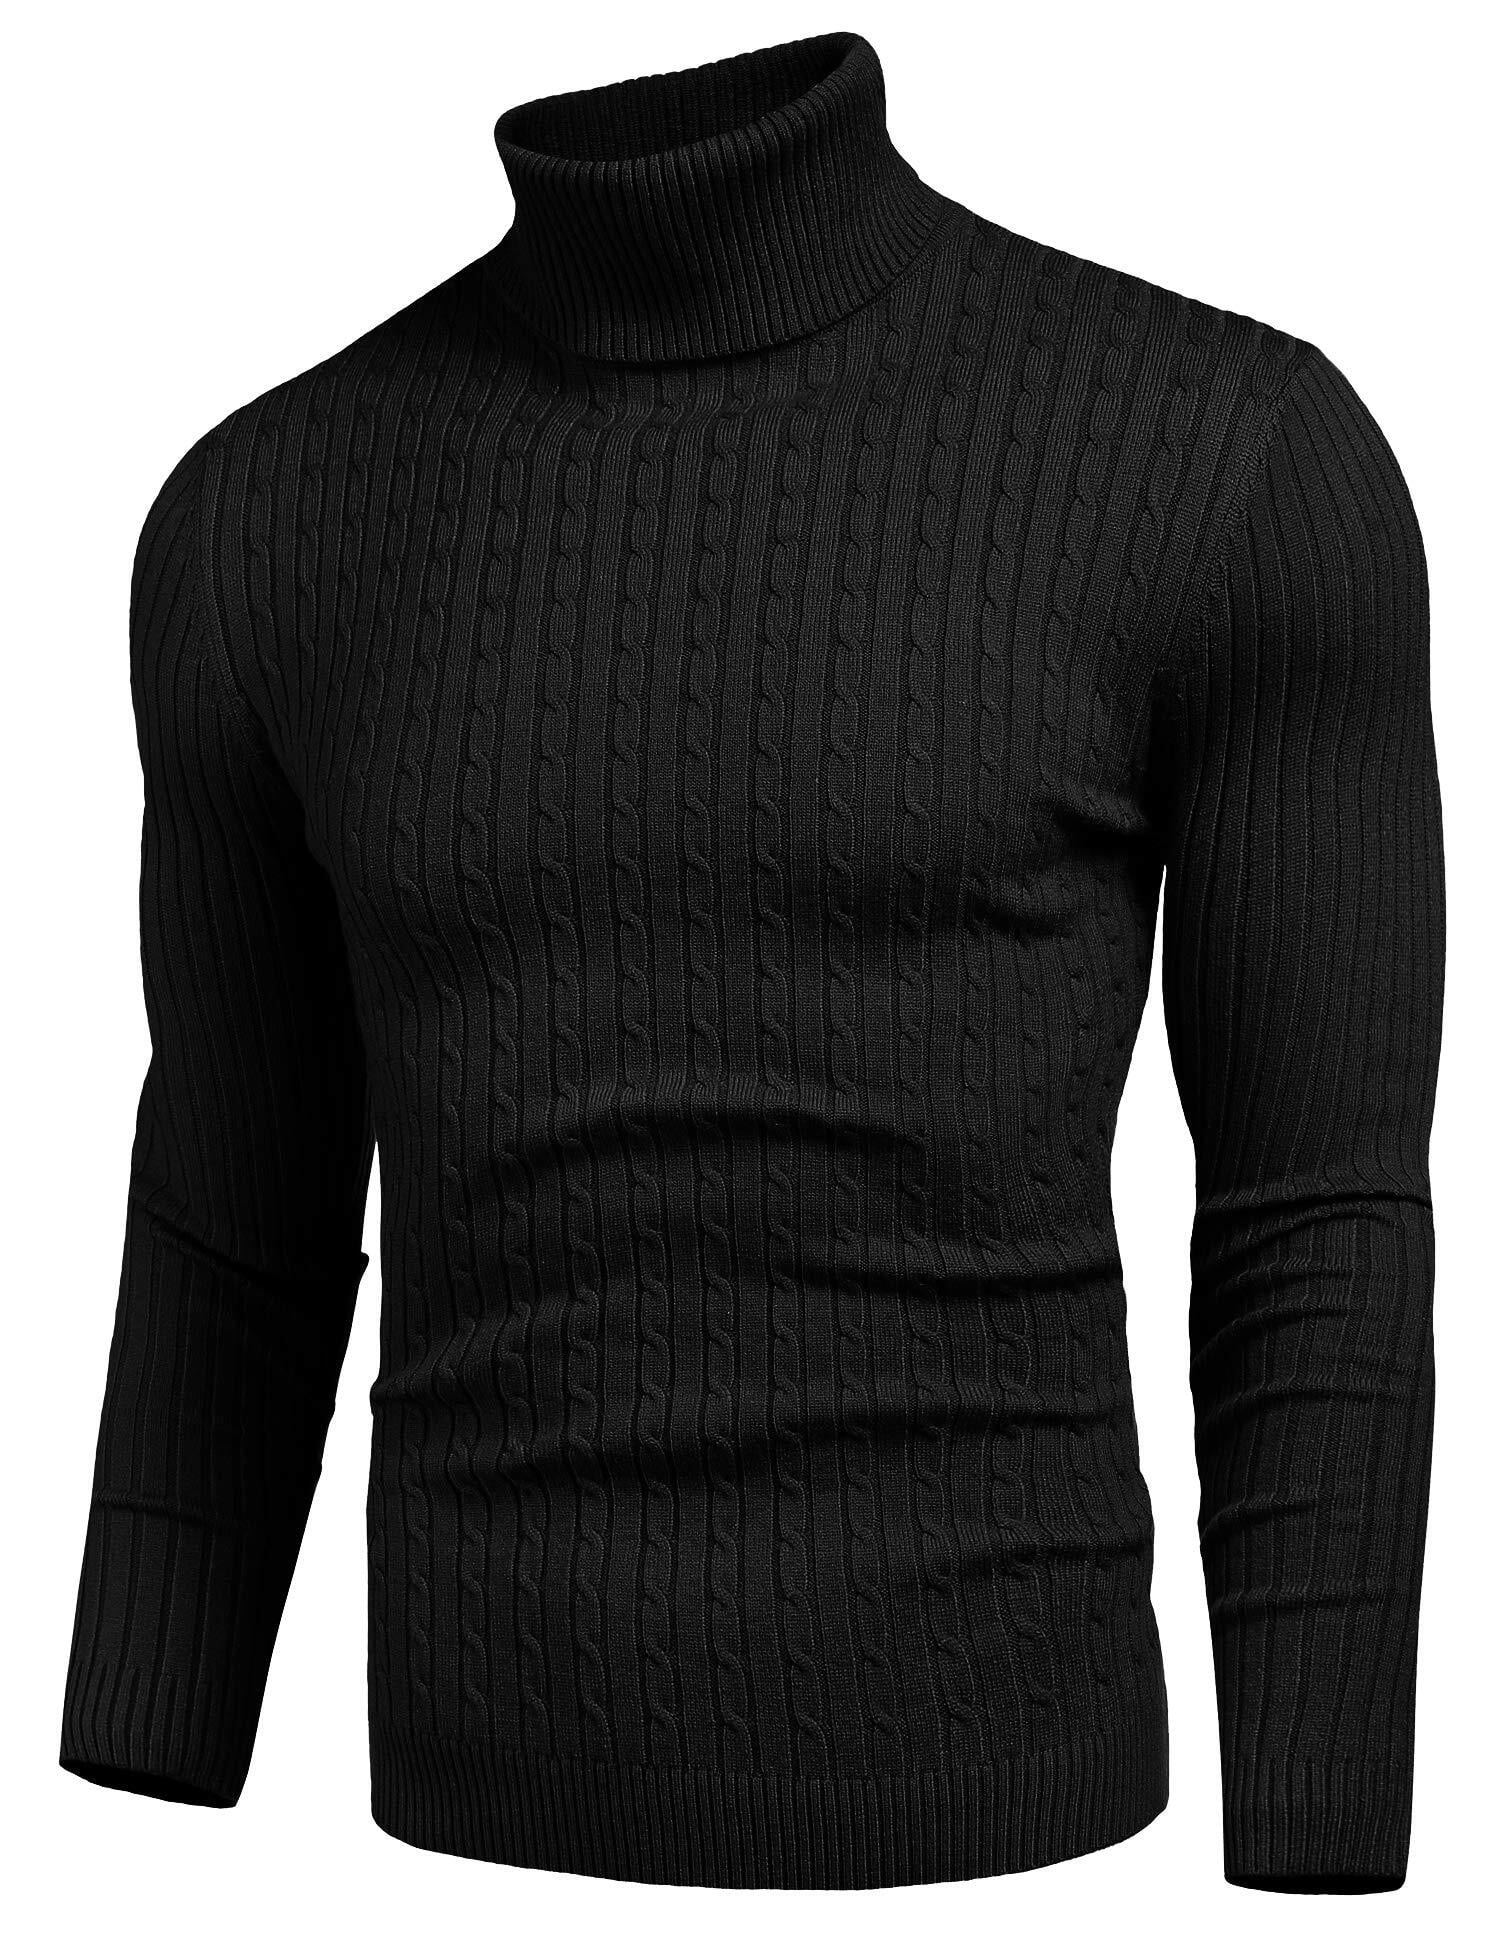 nine bull Mens Slim Fit Turtleneck Sweater Long Sleeve Basic Pullover ...